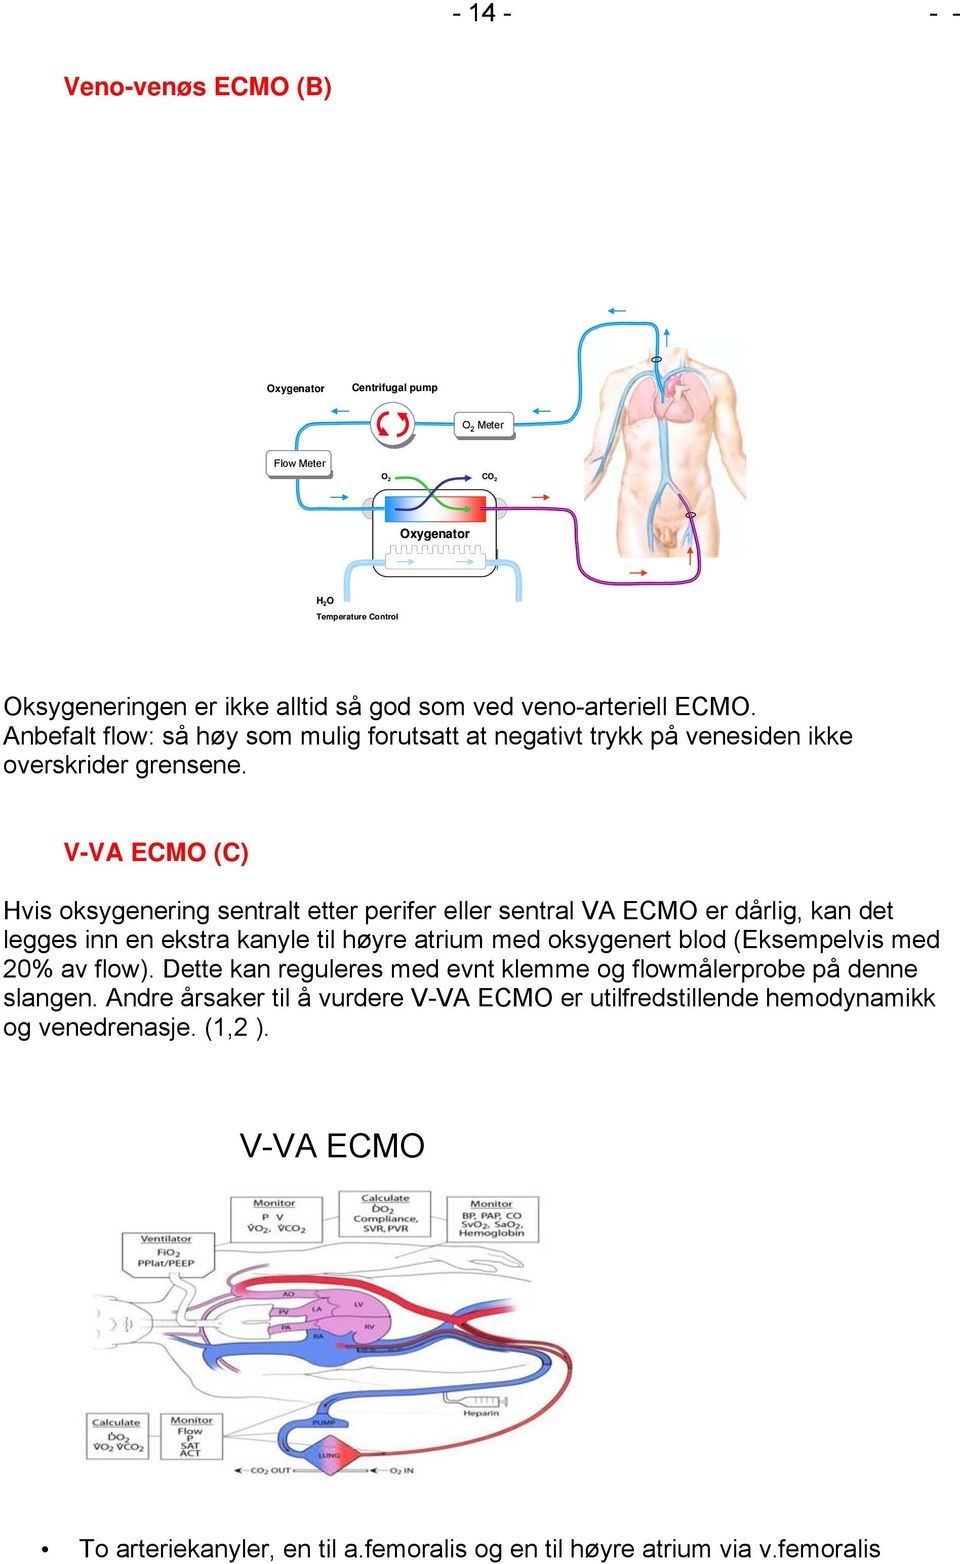 V-VA ECMO (C) Hvis oksygenering sentralt etter perifer eller sentral VA ECMO er dårlig, kan det legges inn en ekstra kanyle til høyre atrium med oksygenert blod (Eksempelvis med 20% av